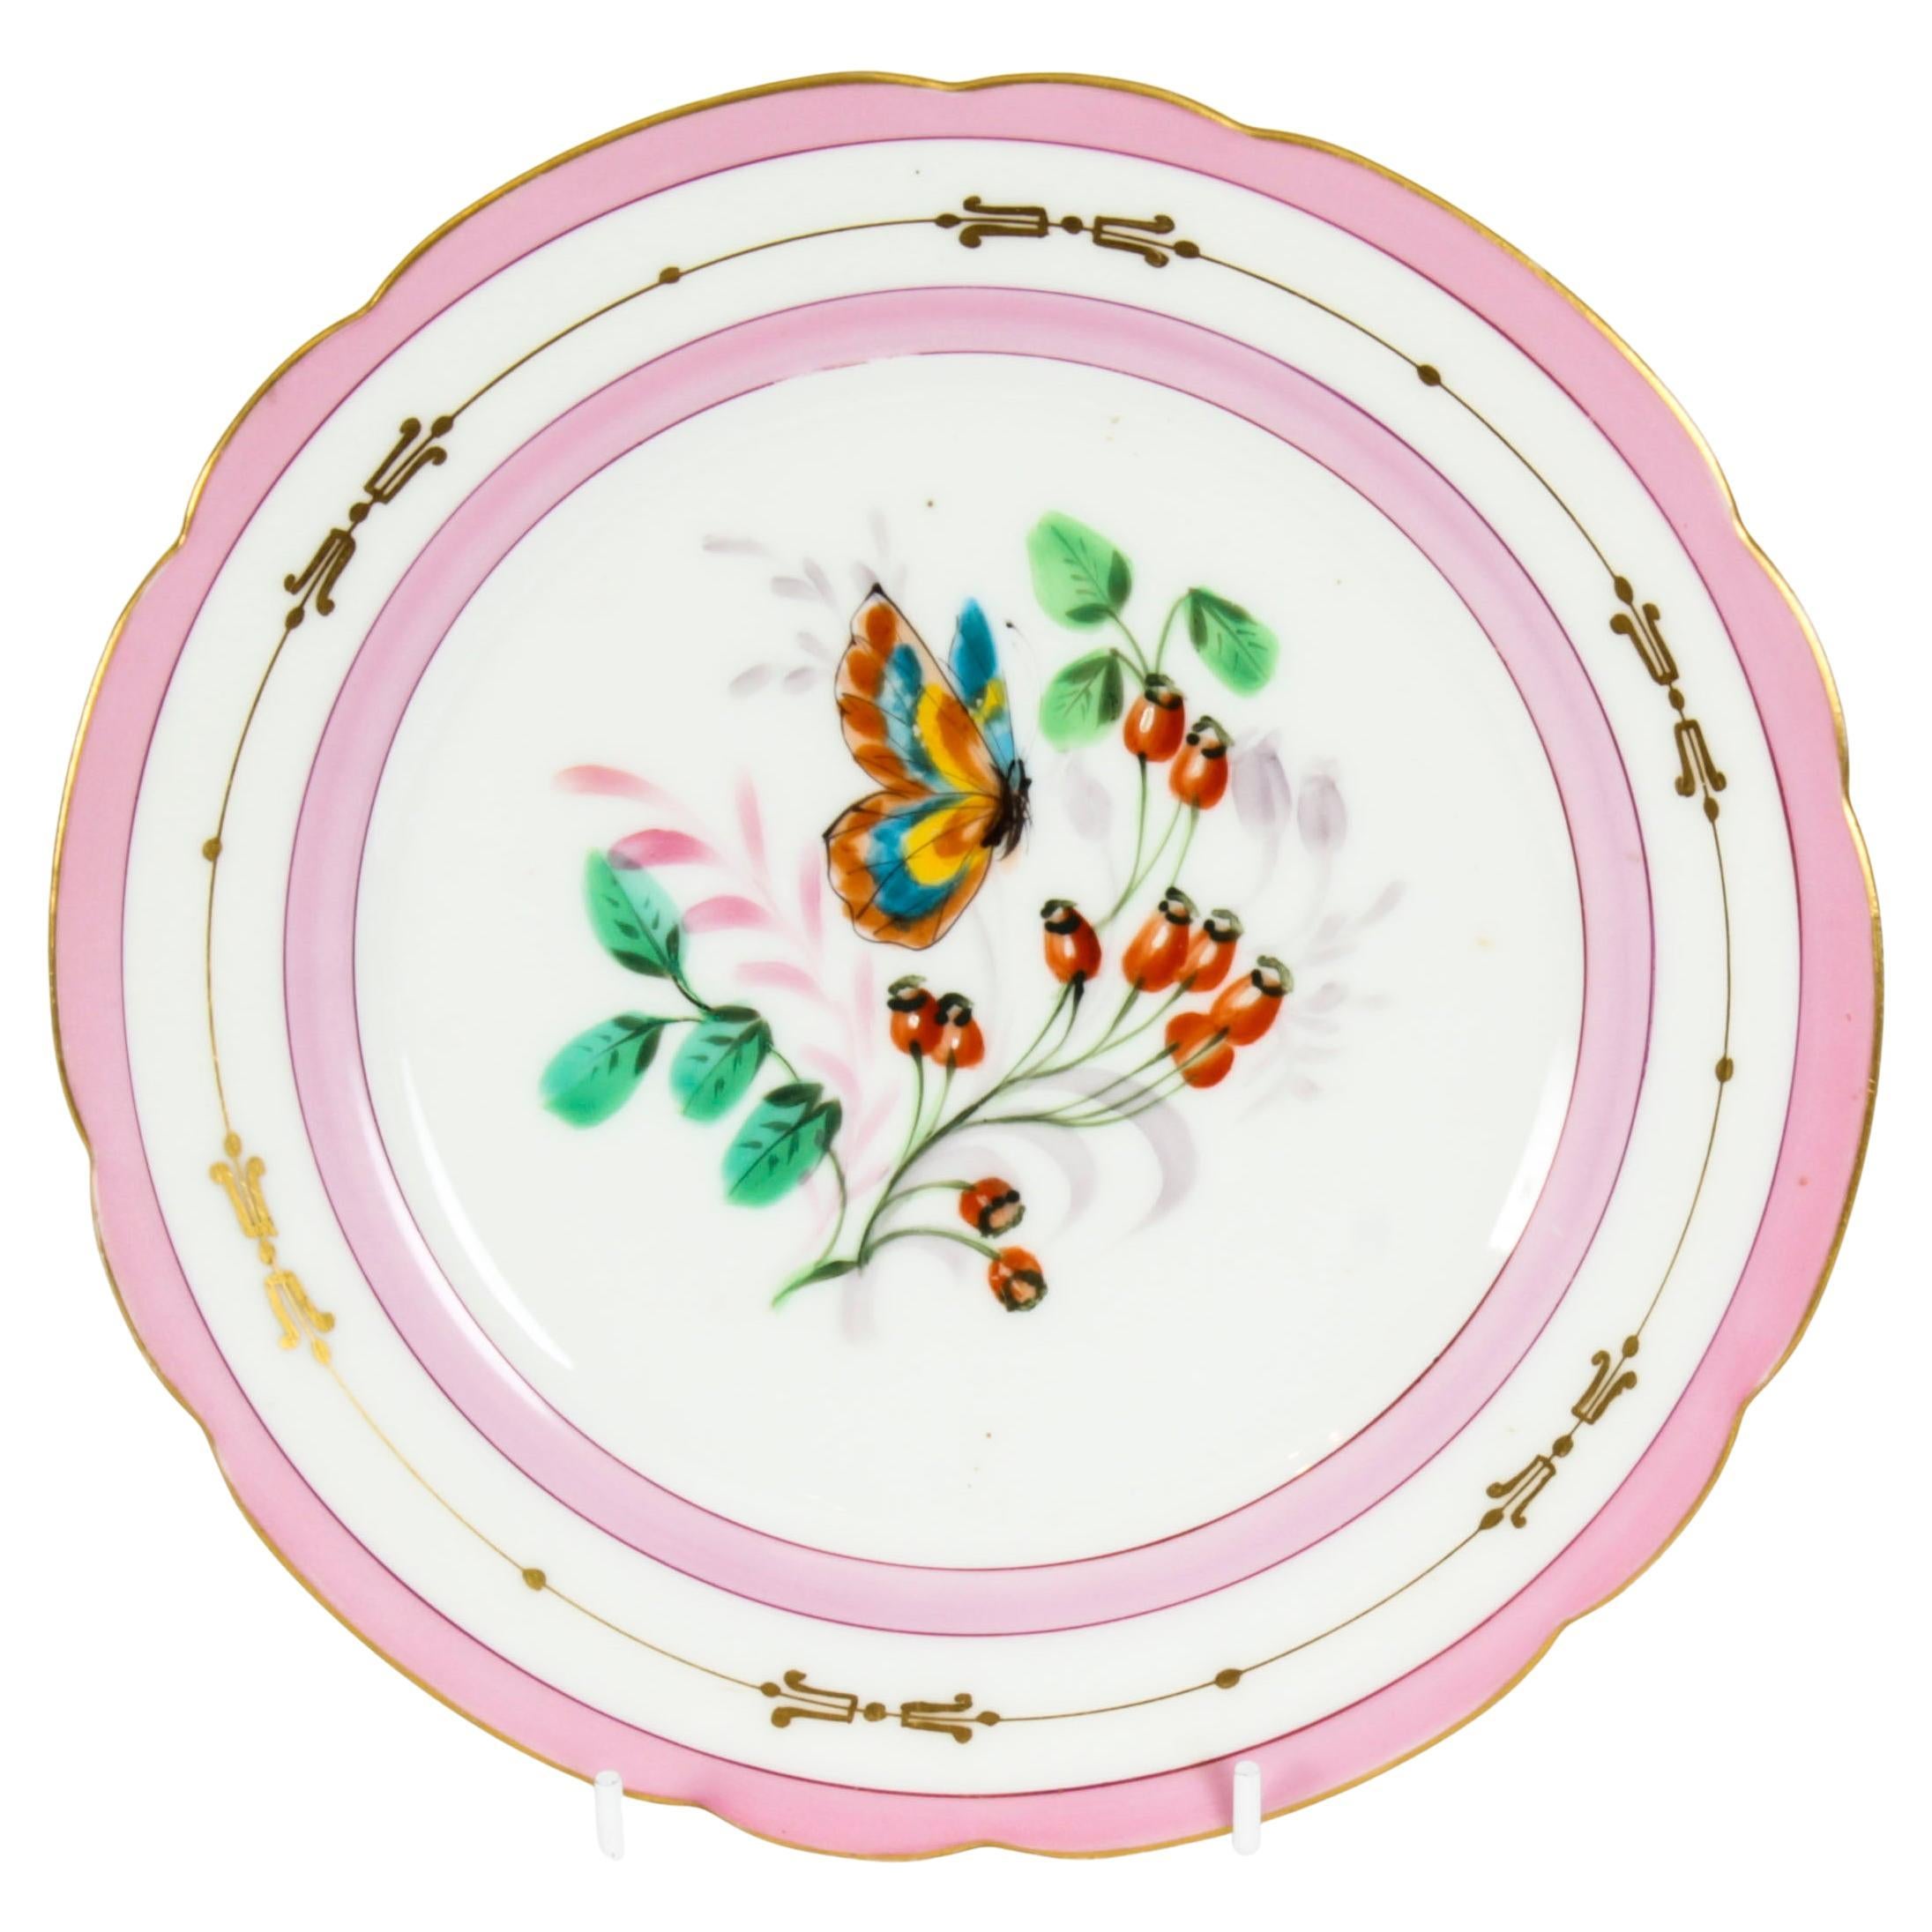 Assiette d'armoire ancienne en porcelaine rose, 19ème siècle